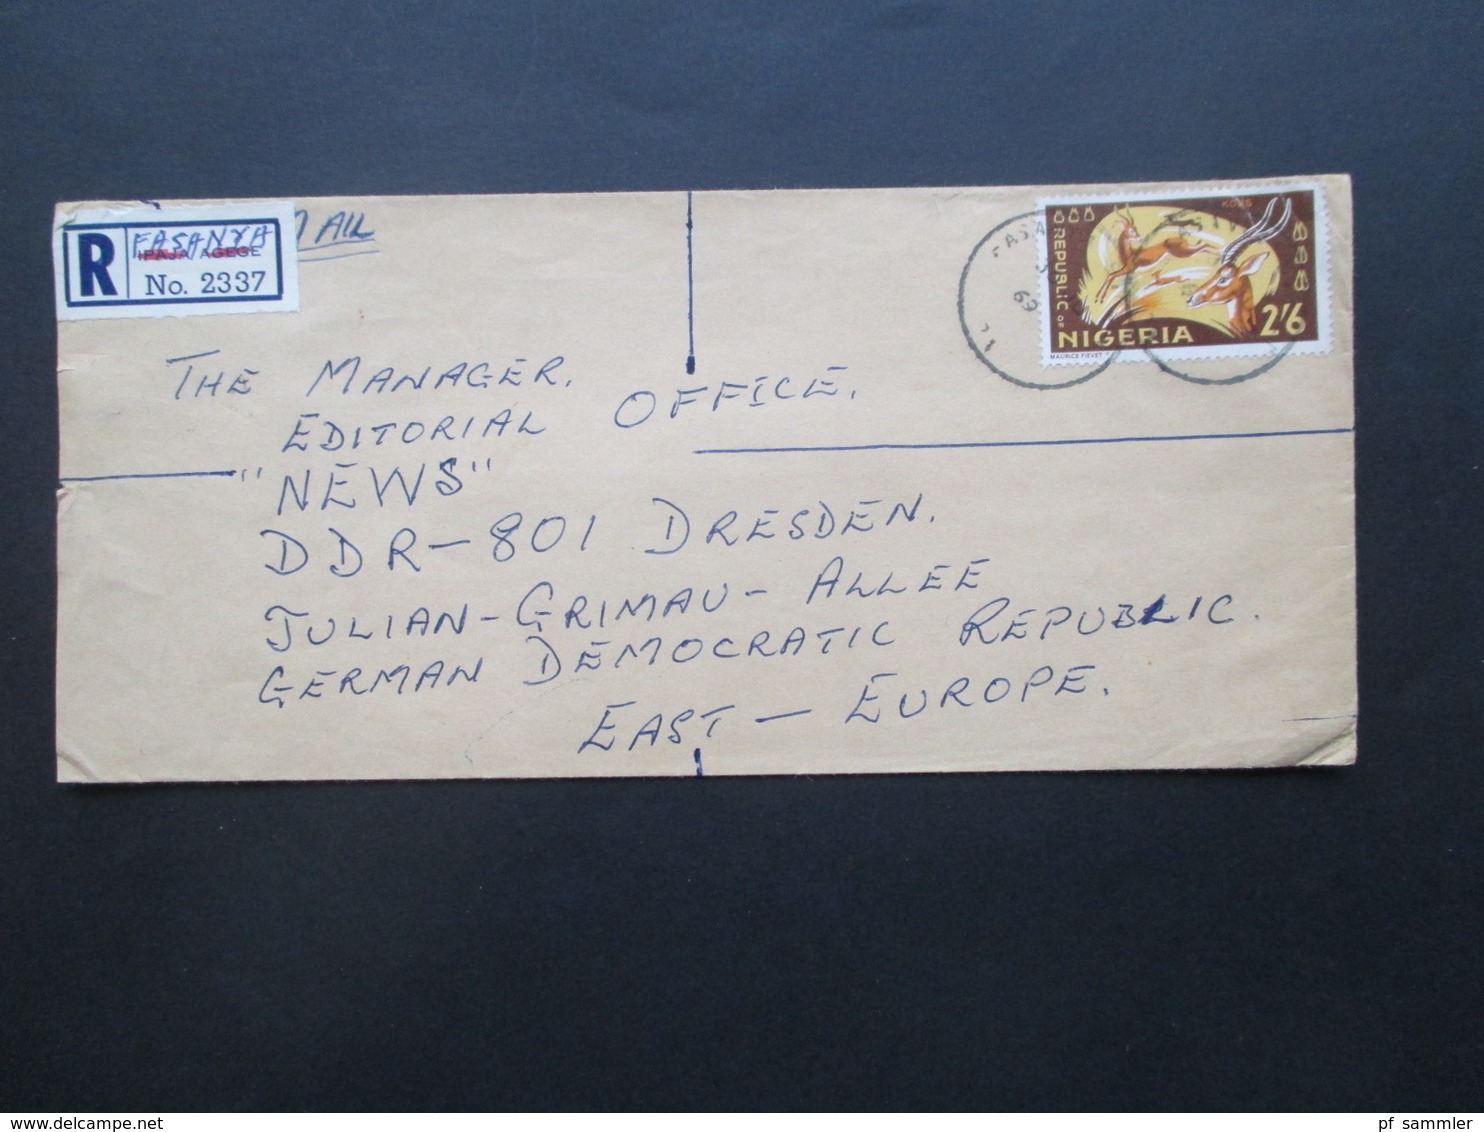 Nigeria 1969 Air Mail / Luftpost Einschreiben handschriftl geänderter R Zettel Fasanya nach Dresden mit je 8 Stempeln